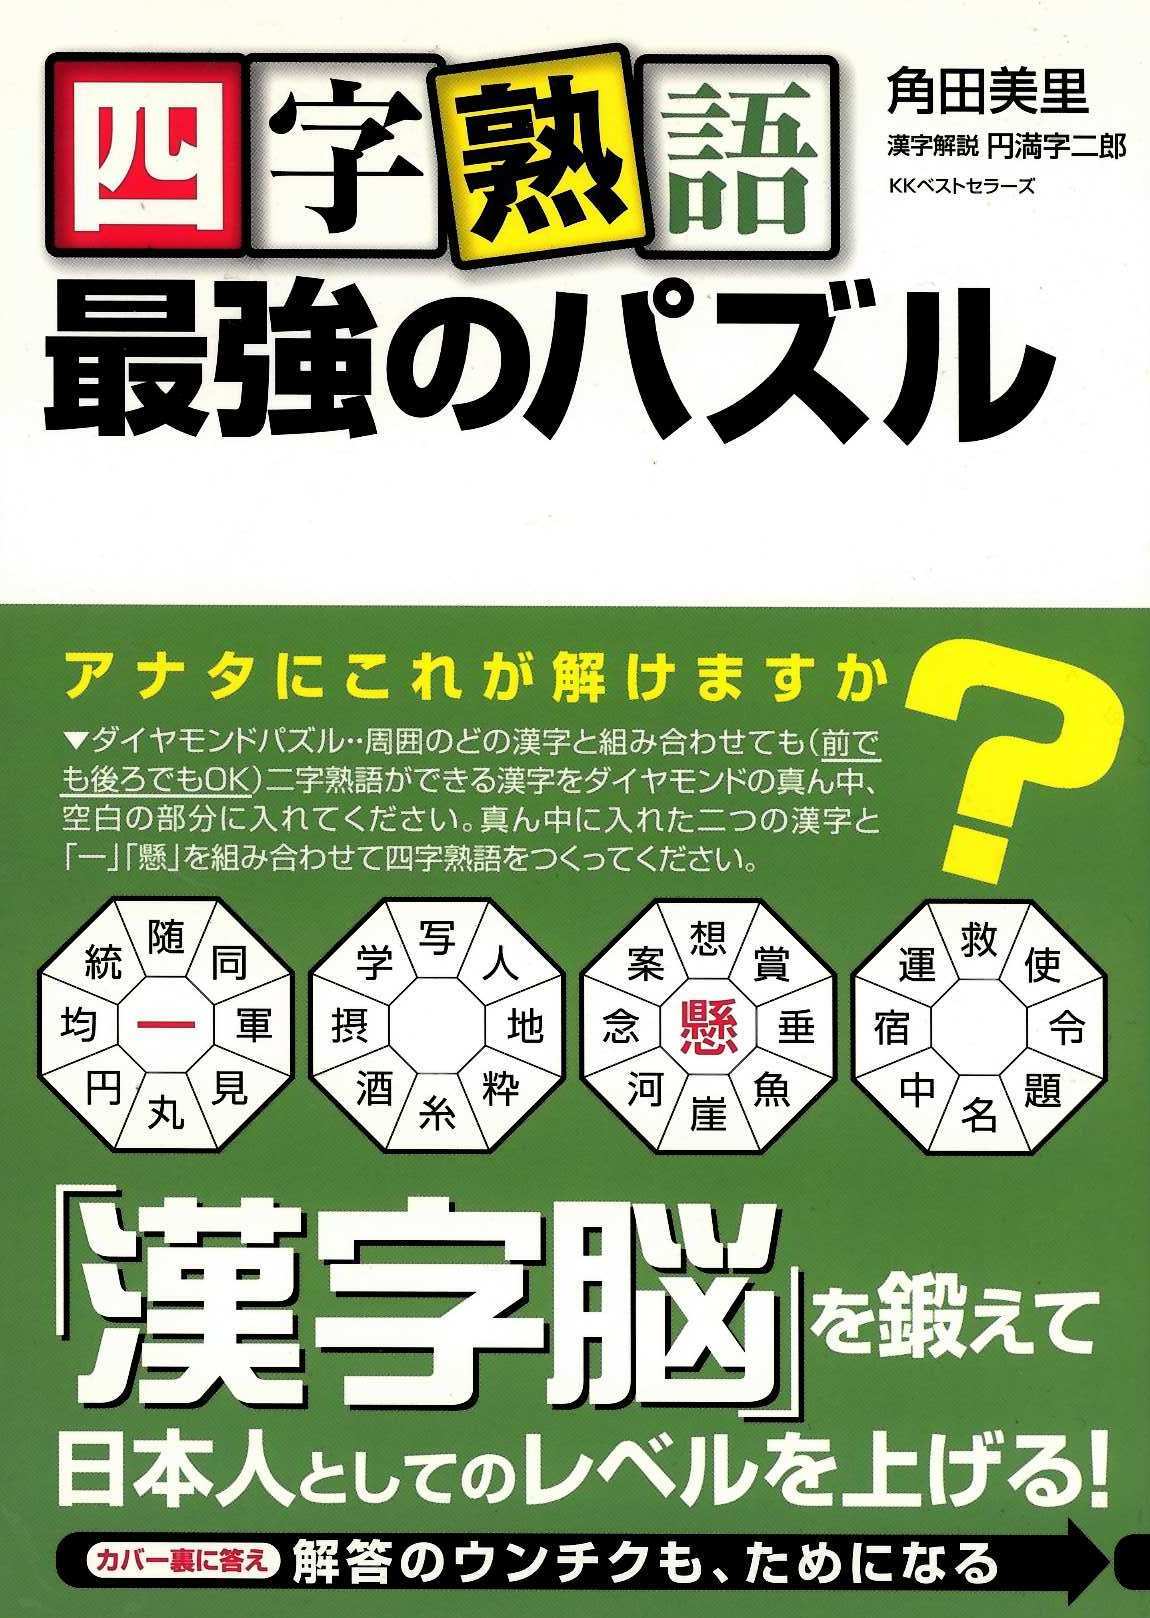 漢字 は お好きですか パズル クロスワード クロスワードパズル作家 角田美里日記